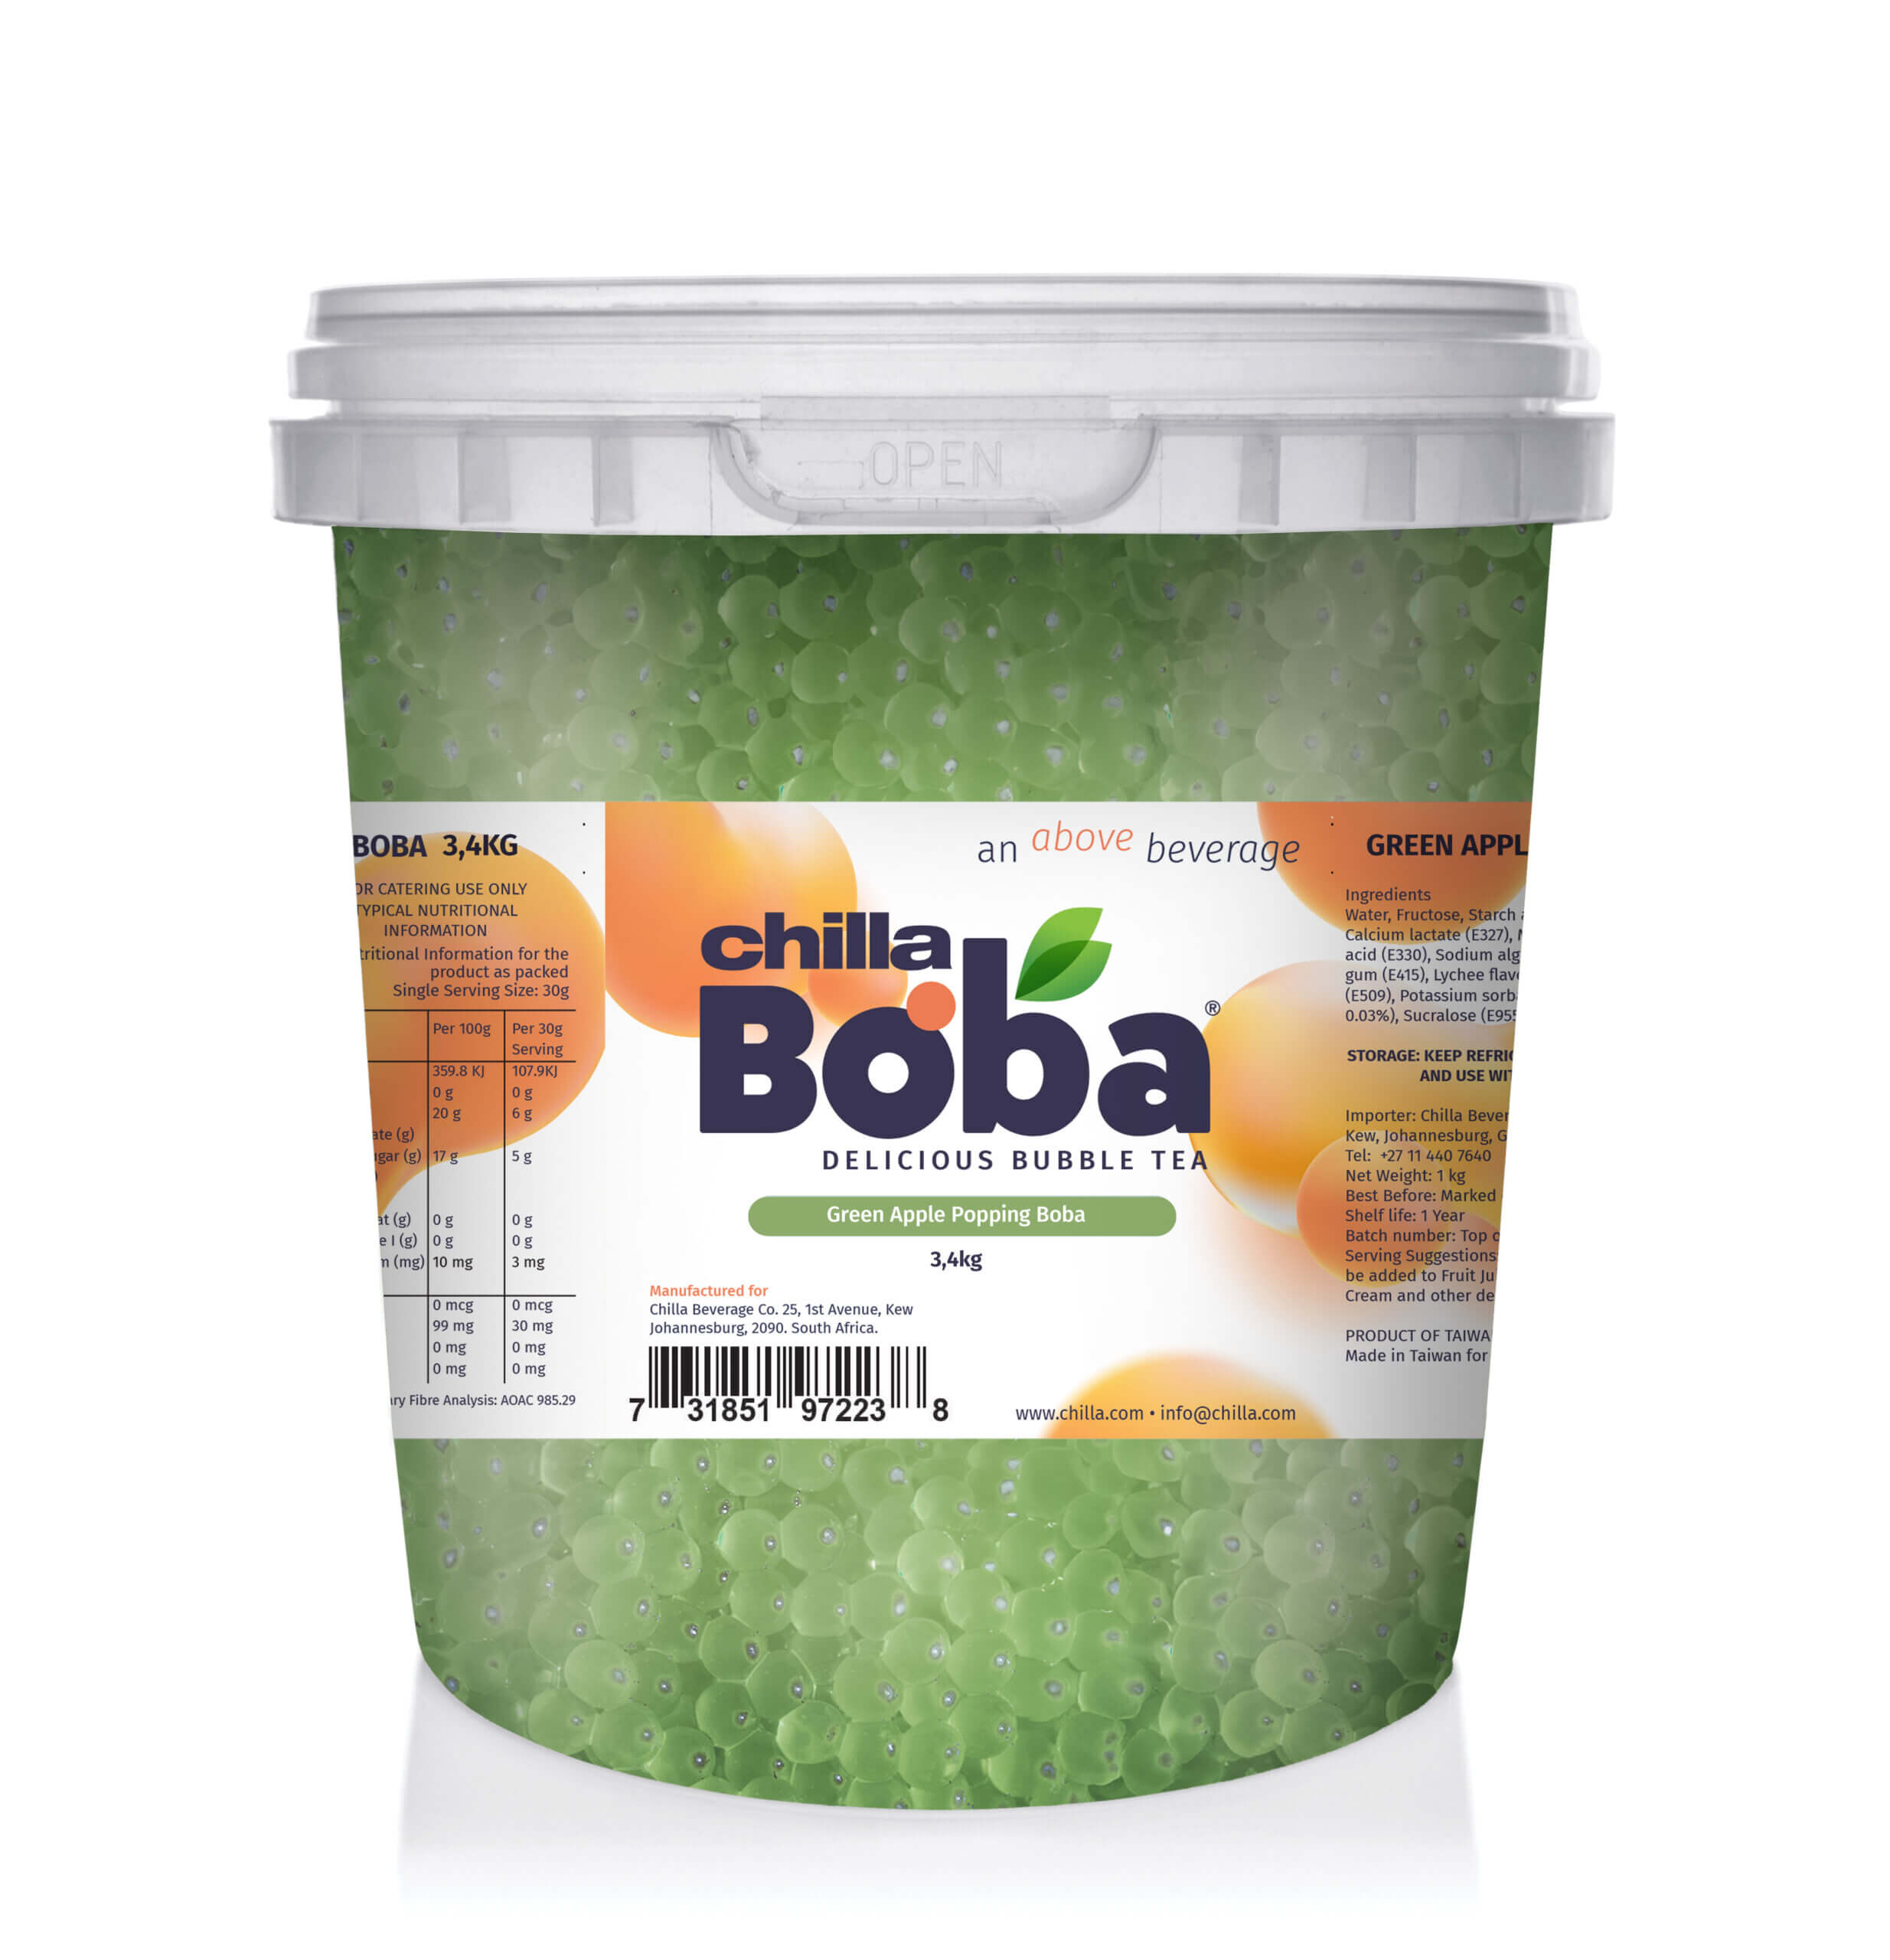 Green Apple Popping Boba 3.4kg